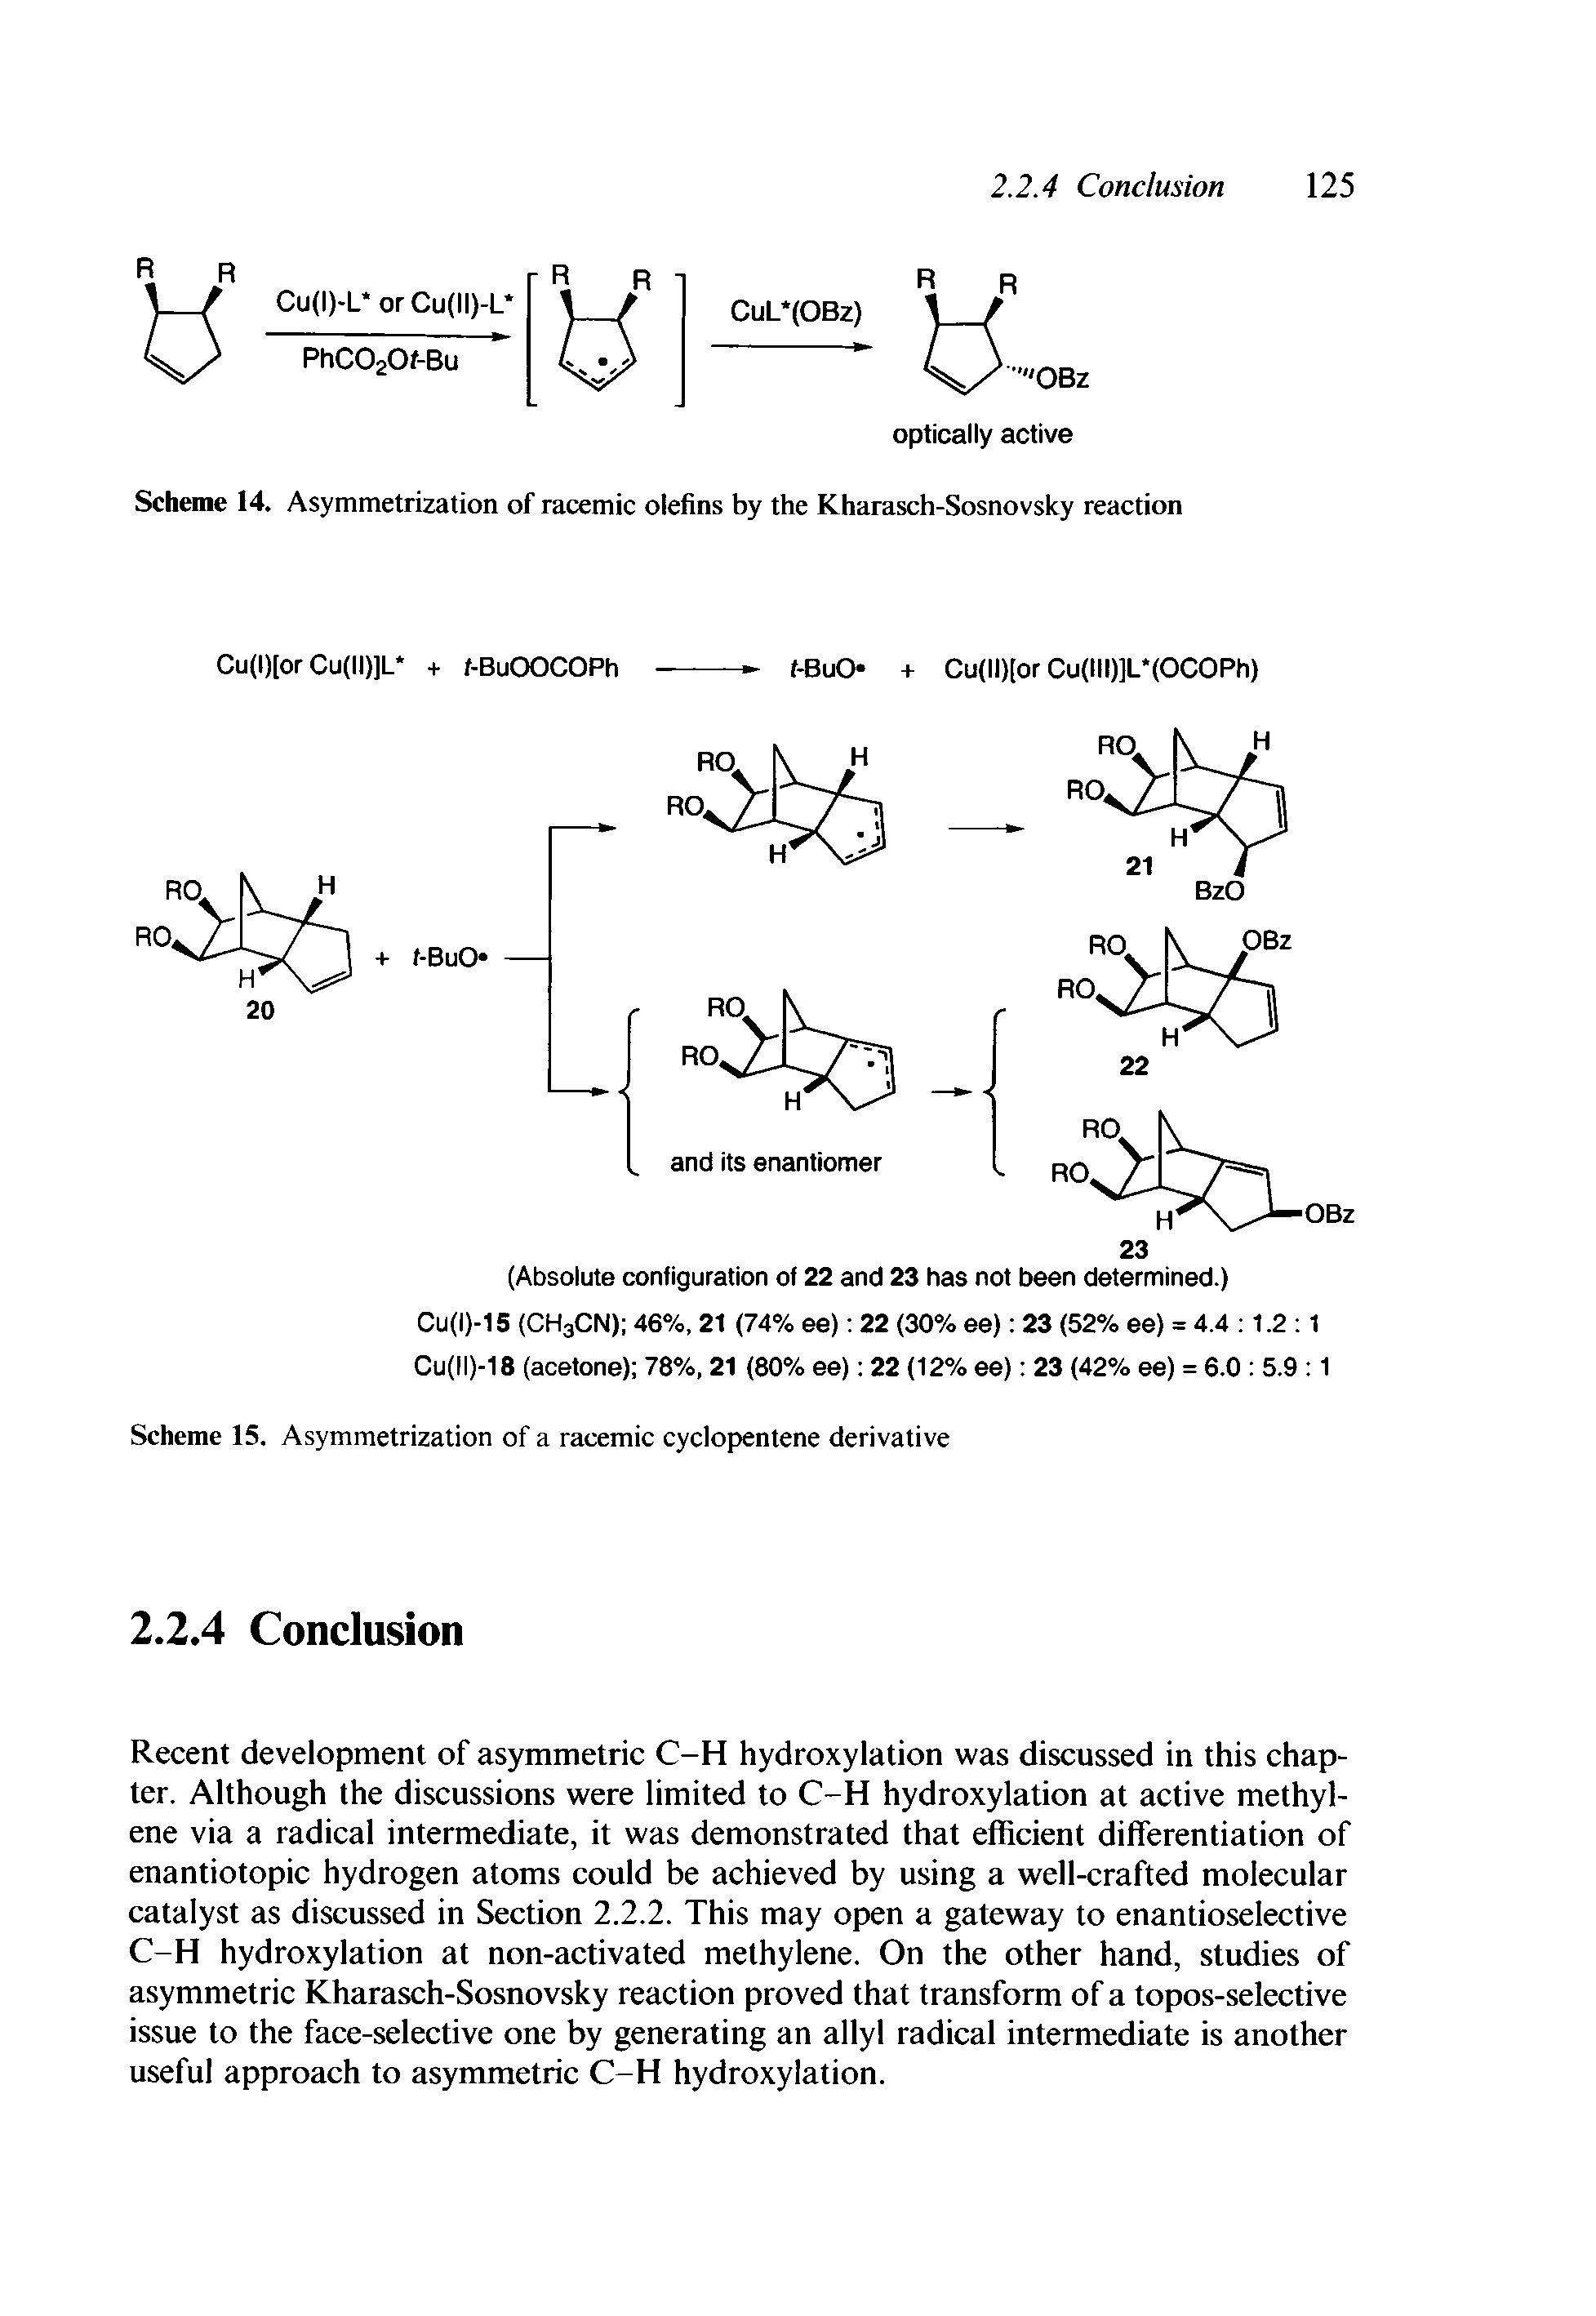 Scheme 14. Asymmetrization of racemic olefins by the Kharasch-Sosnovsky reaction...